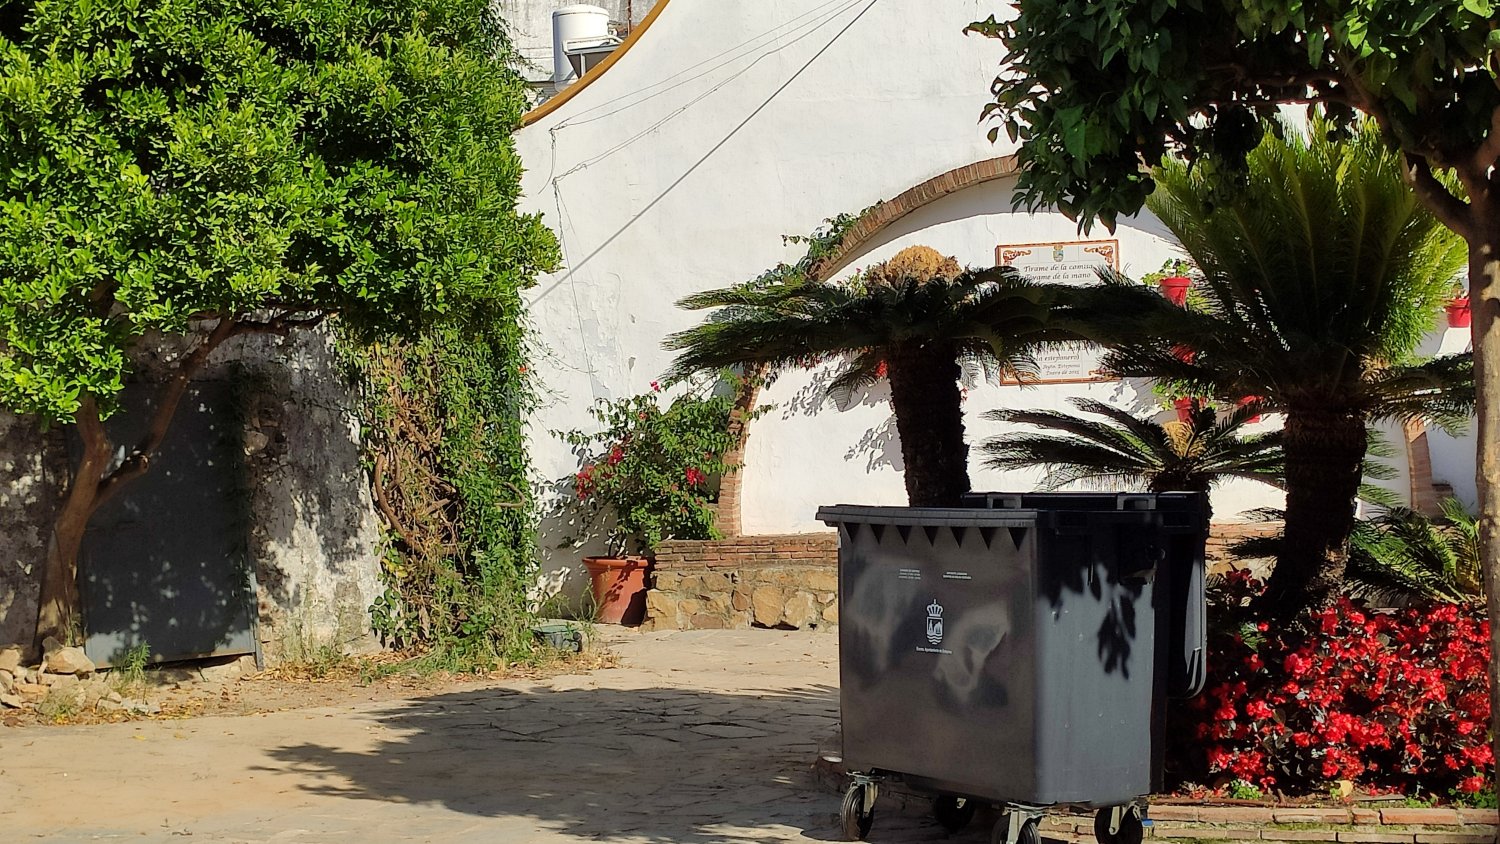 El Ayuntamiento renueva los contenedores de residuos ‘quita y pon’ del centro urbano de Estepona